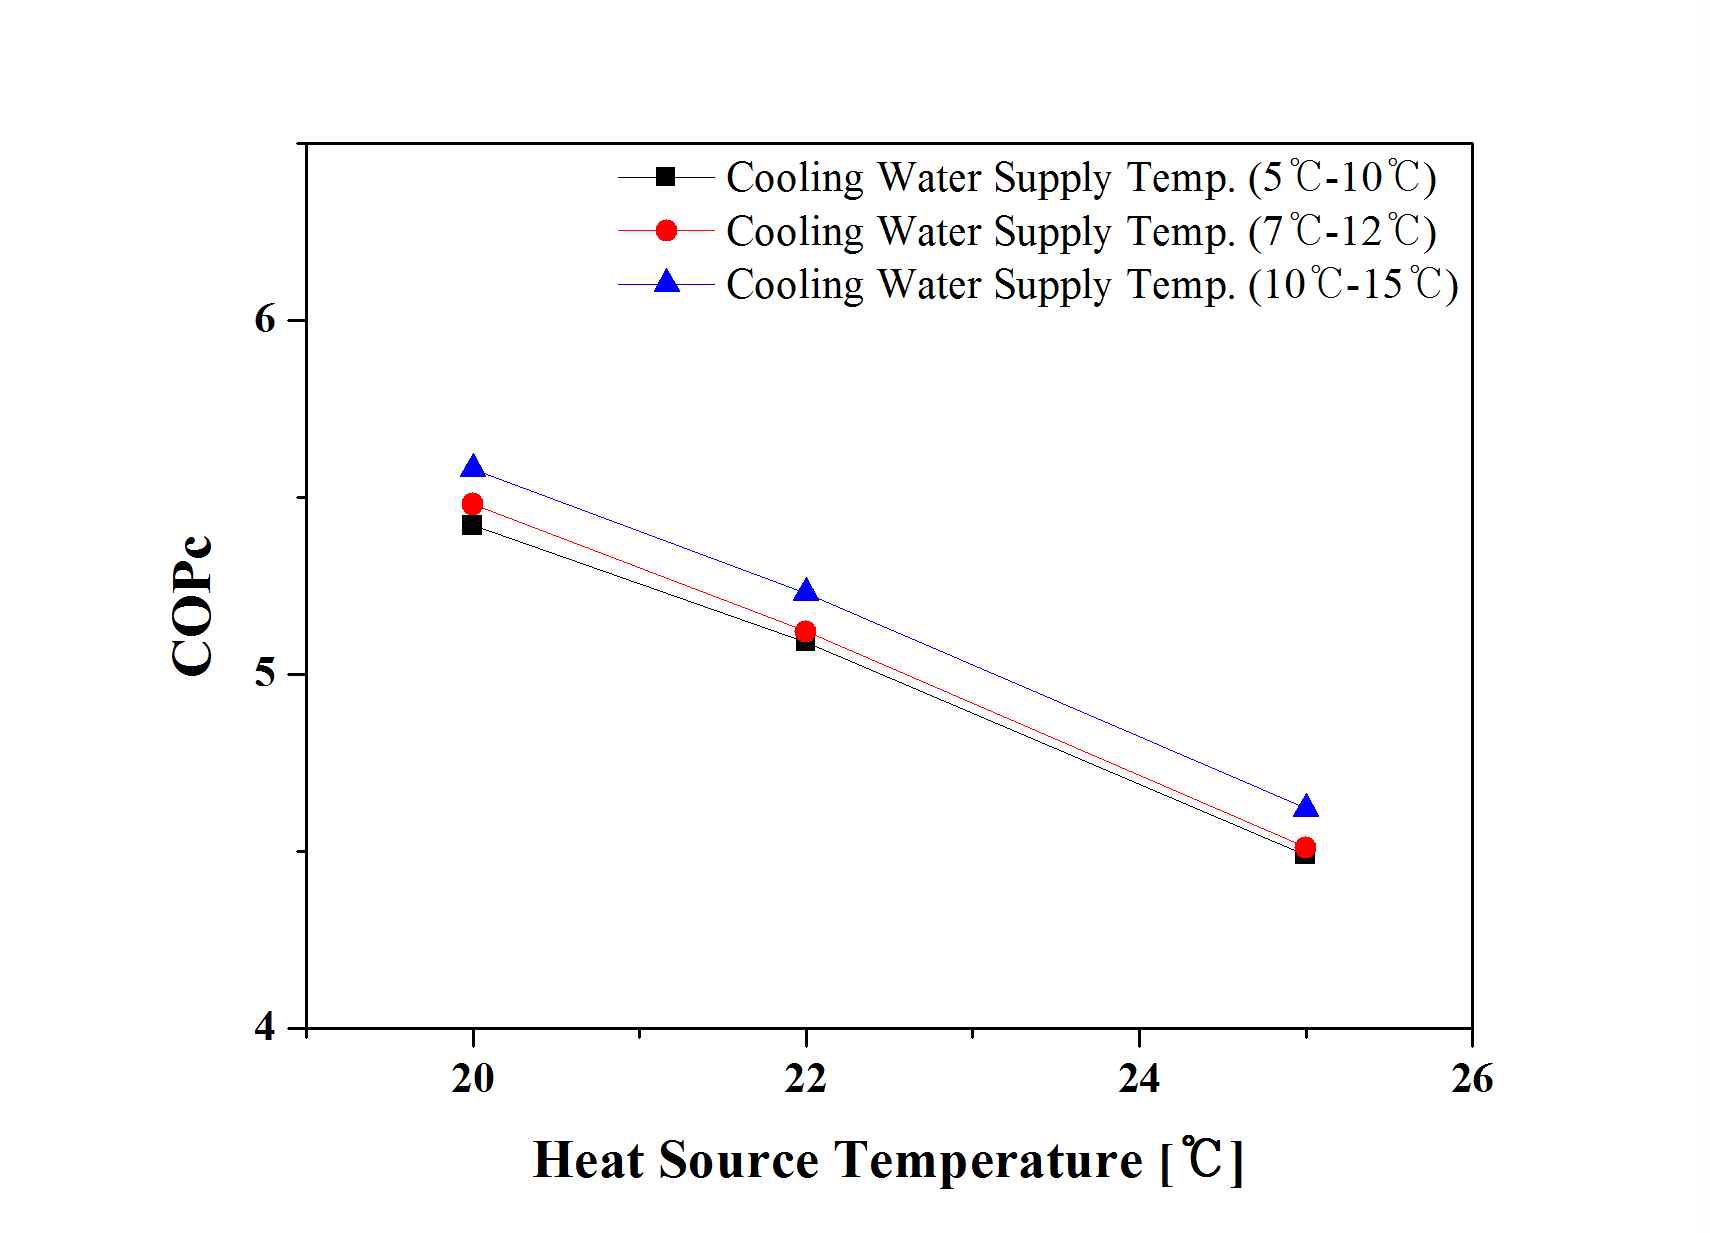 열원온도에 따른 냉방COP의 변화